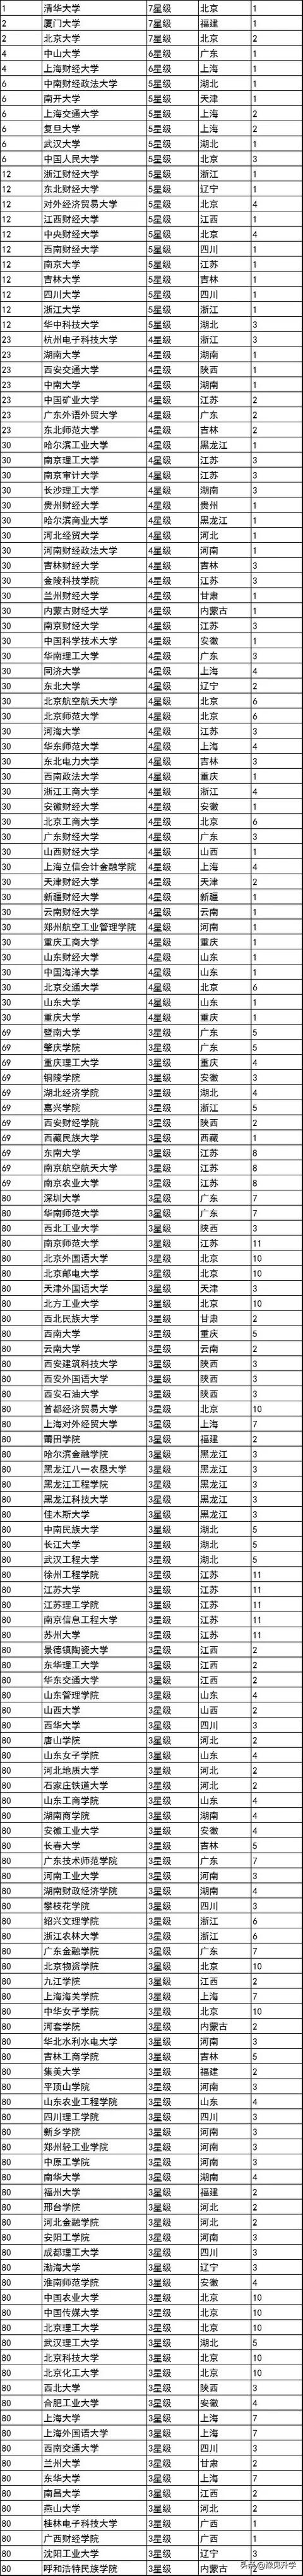 2020临床专业学校排名_重磅:2020年临床医学专业通过认证的中国高校名单公